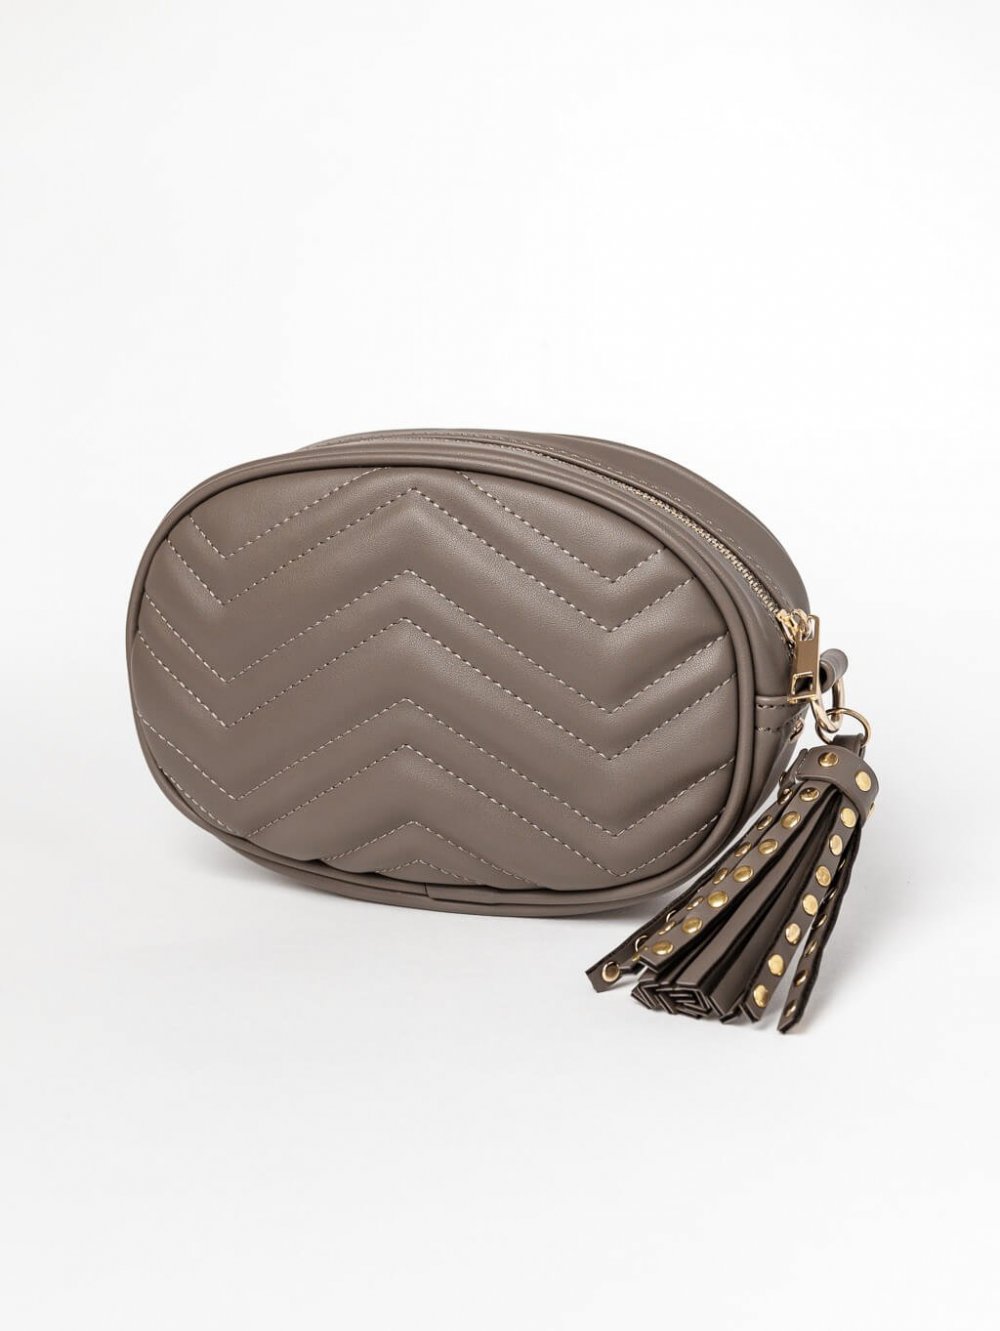 Sivo-hnedá kabelka s príveskom